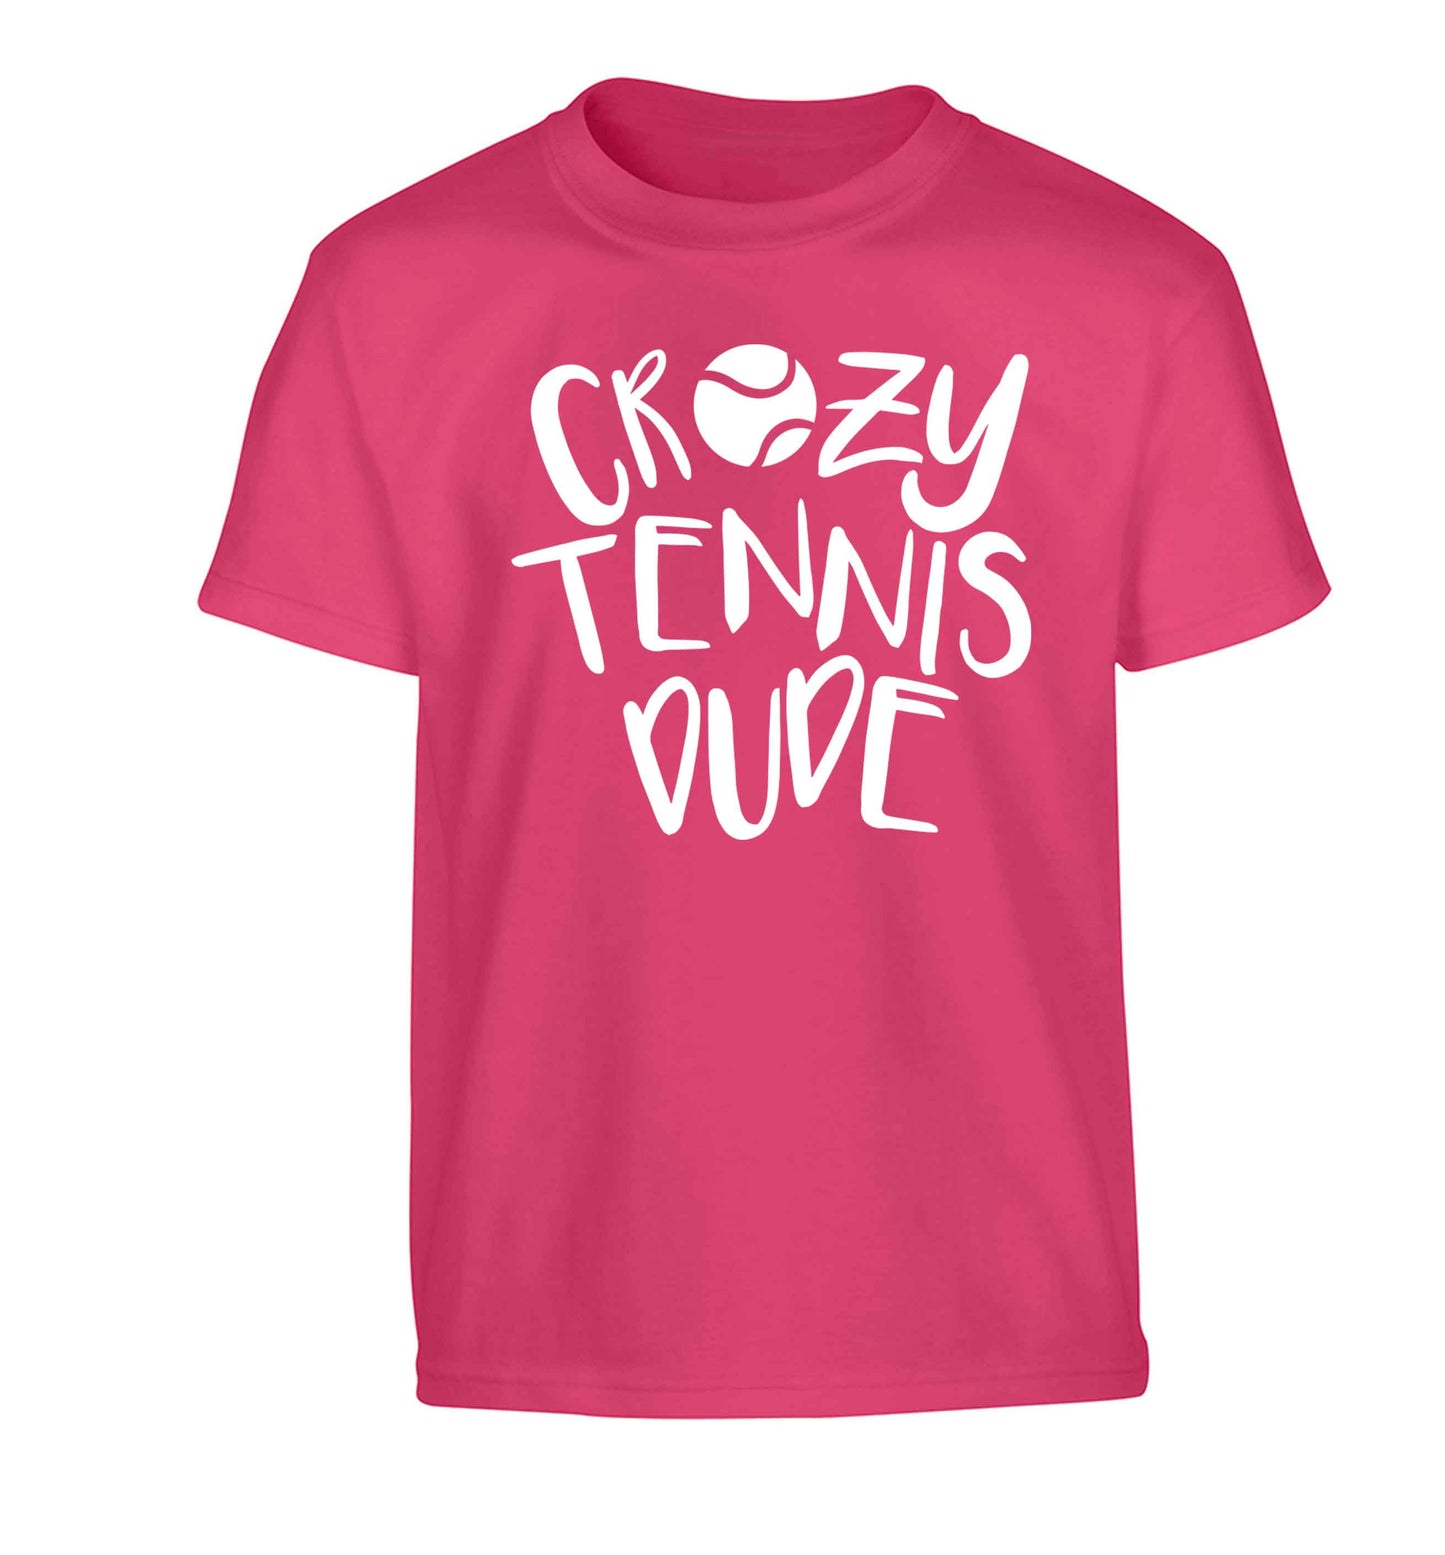 Crazy tennis dude Children's pink Tshirt 12-13 Years